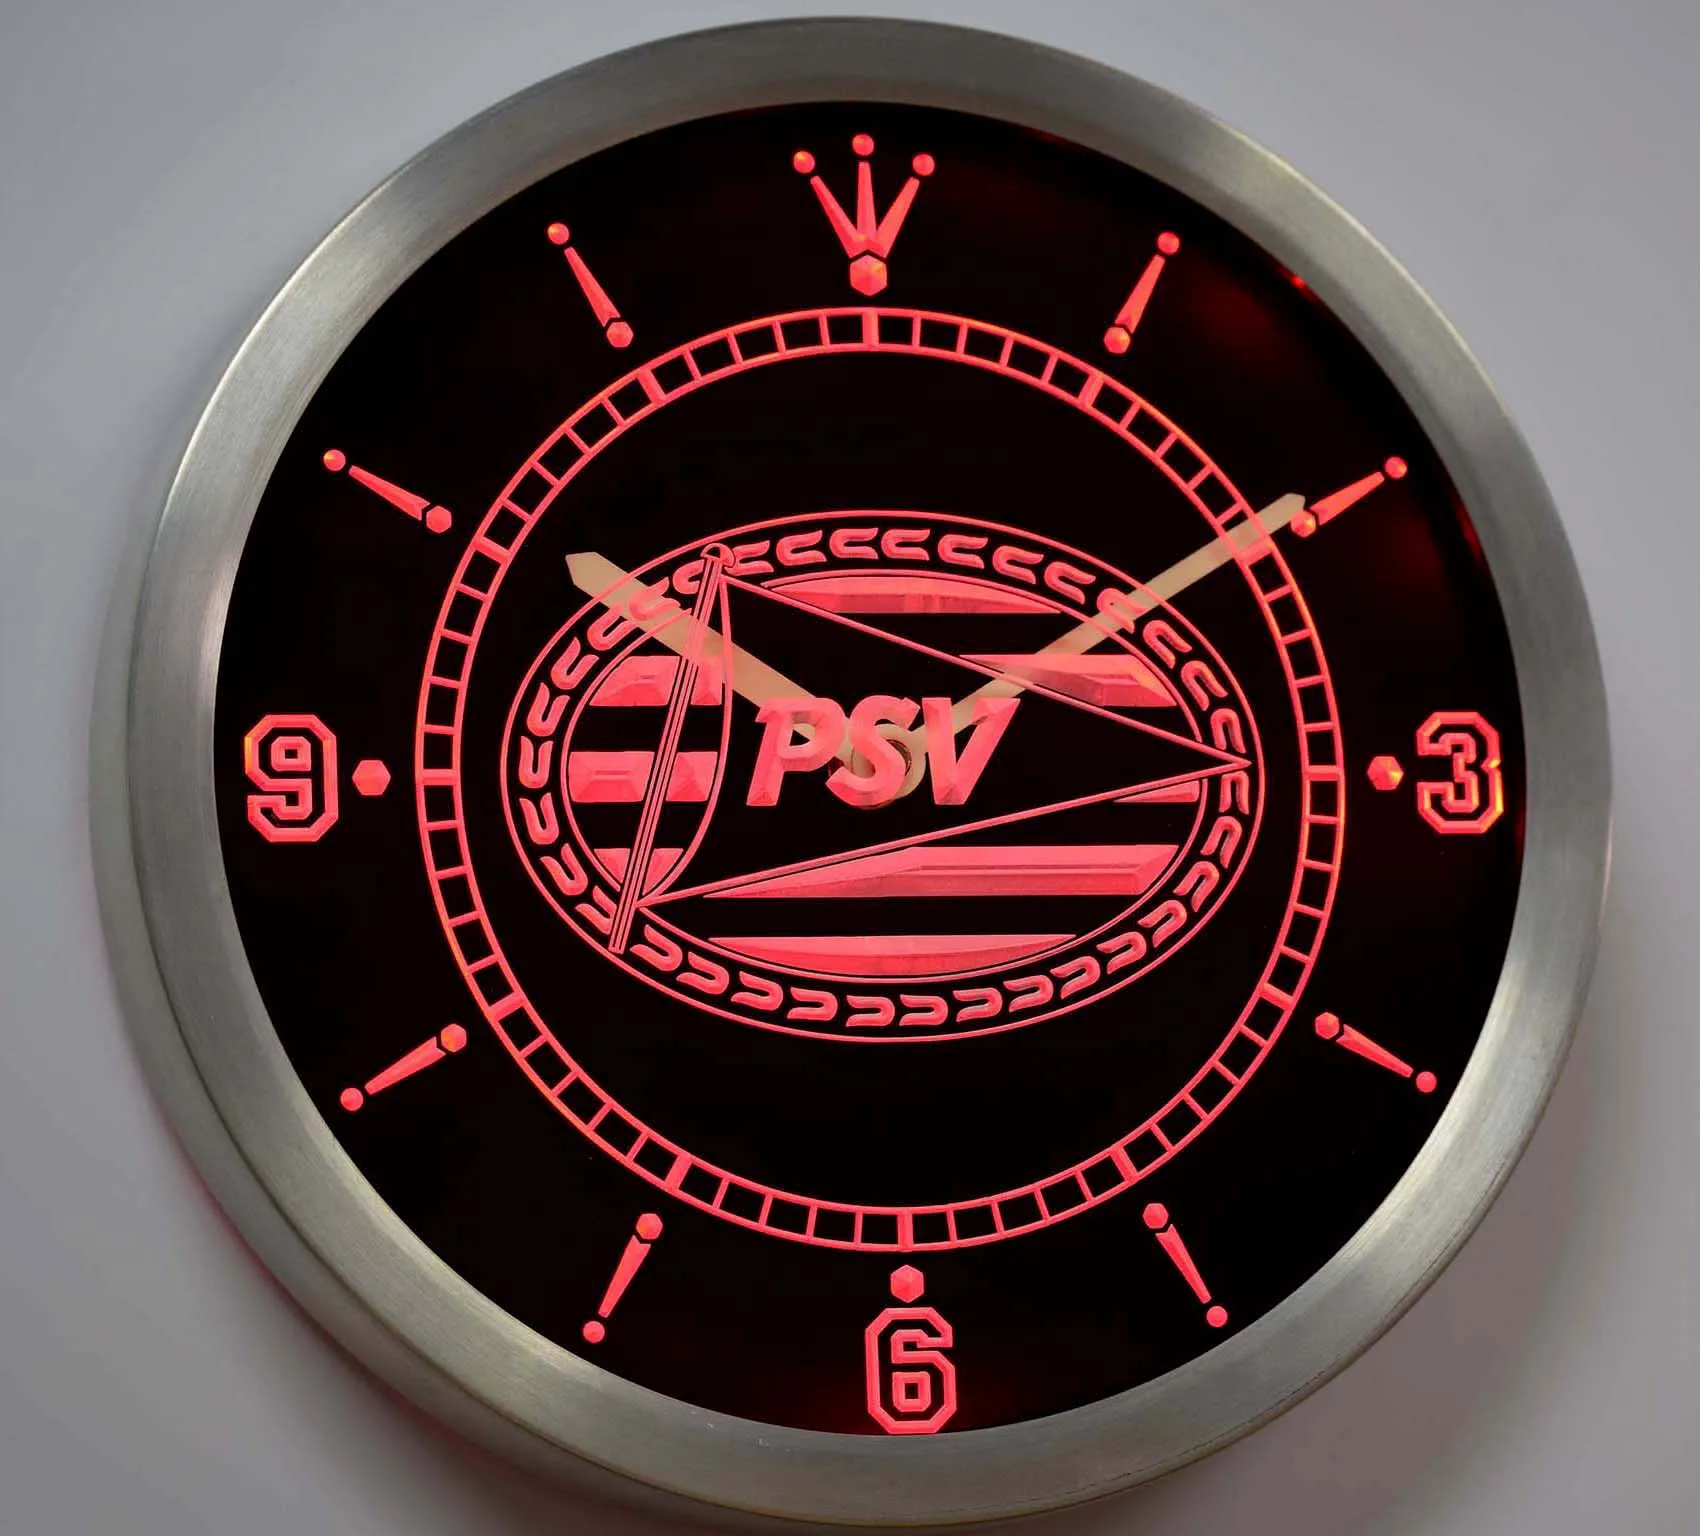 Nc1010 psv Eindhoven Спорт Vereniging Eredivisie неоновая вывеска светодиодный настенные часы